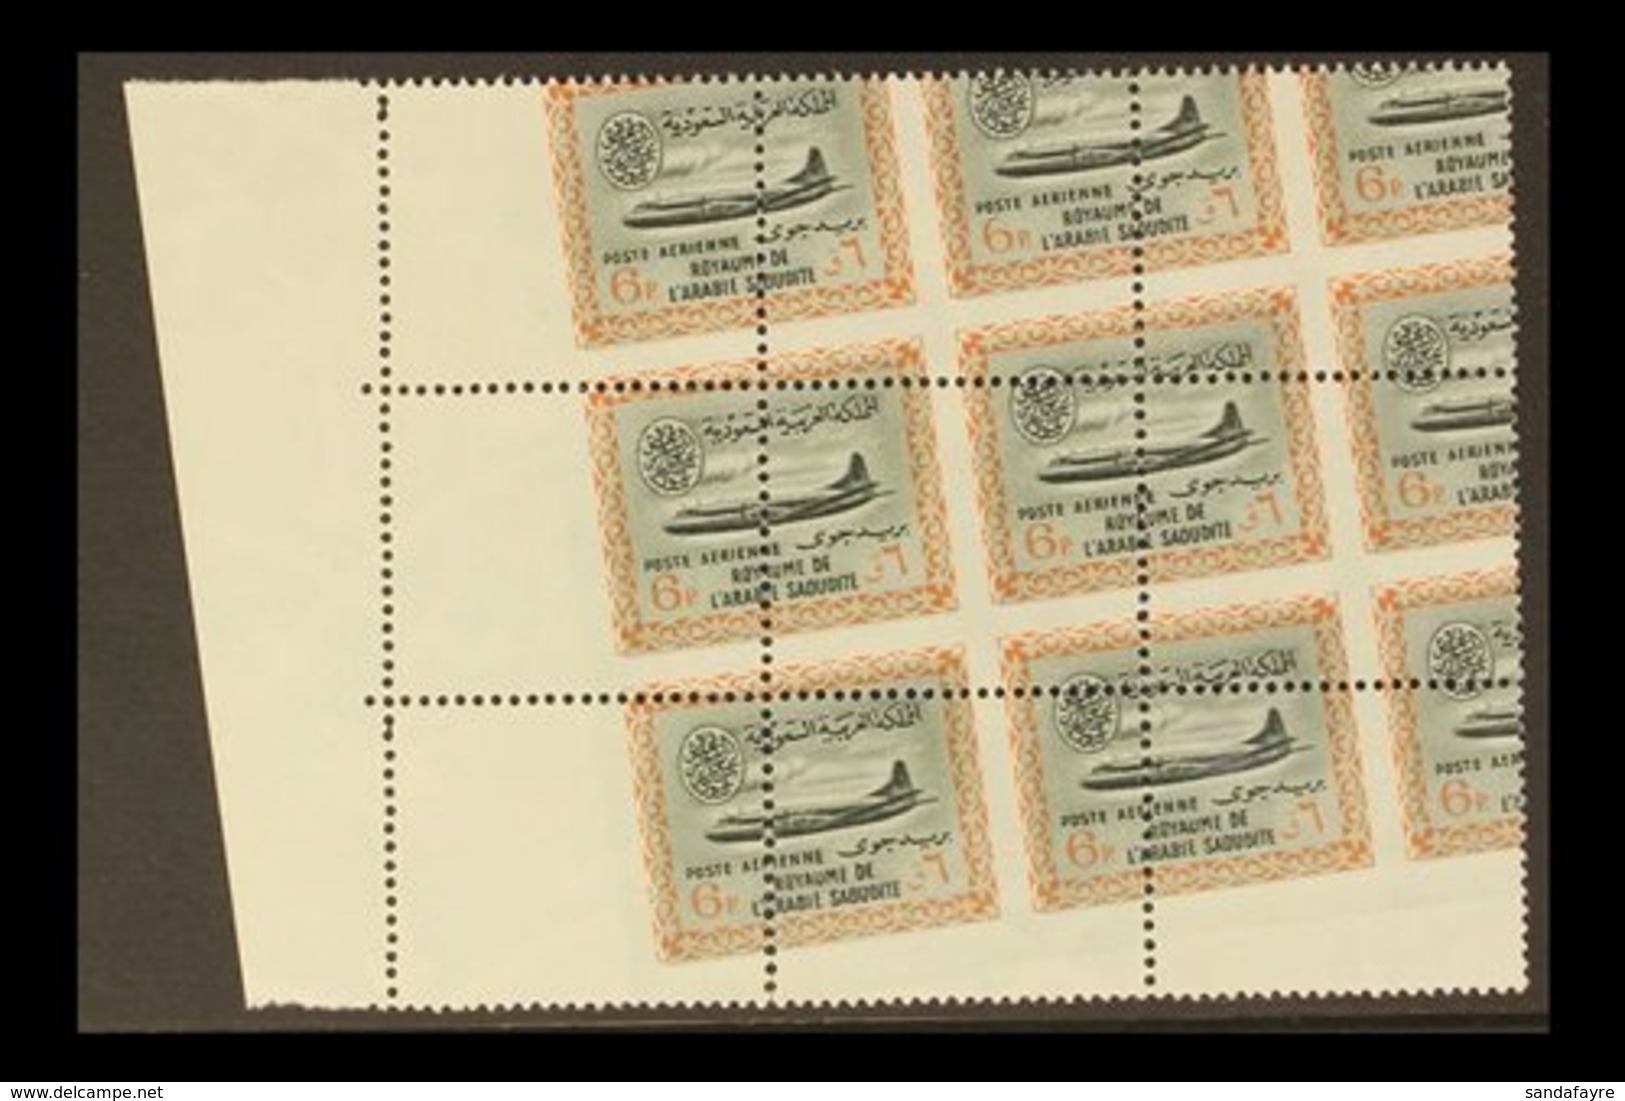 1963 - 5 6p Airmail, Vickers Viscount, SG 484, Marginal Mint Block Of 9 Showing A Massive Diagonal Perf Shift. Spectacul - Saudi-Arabien